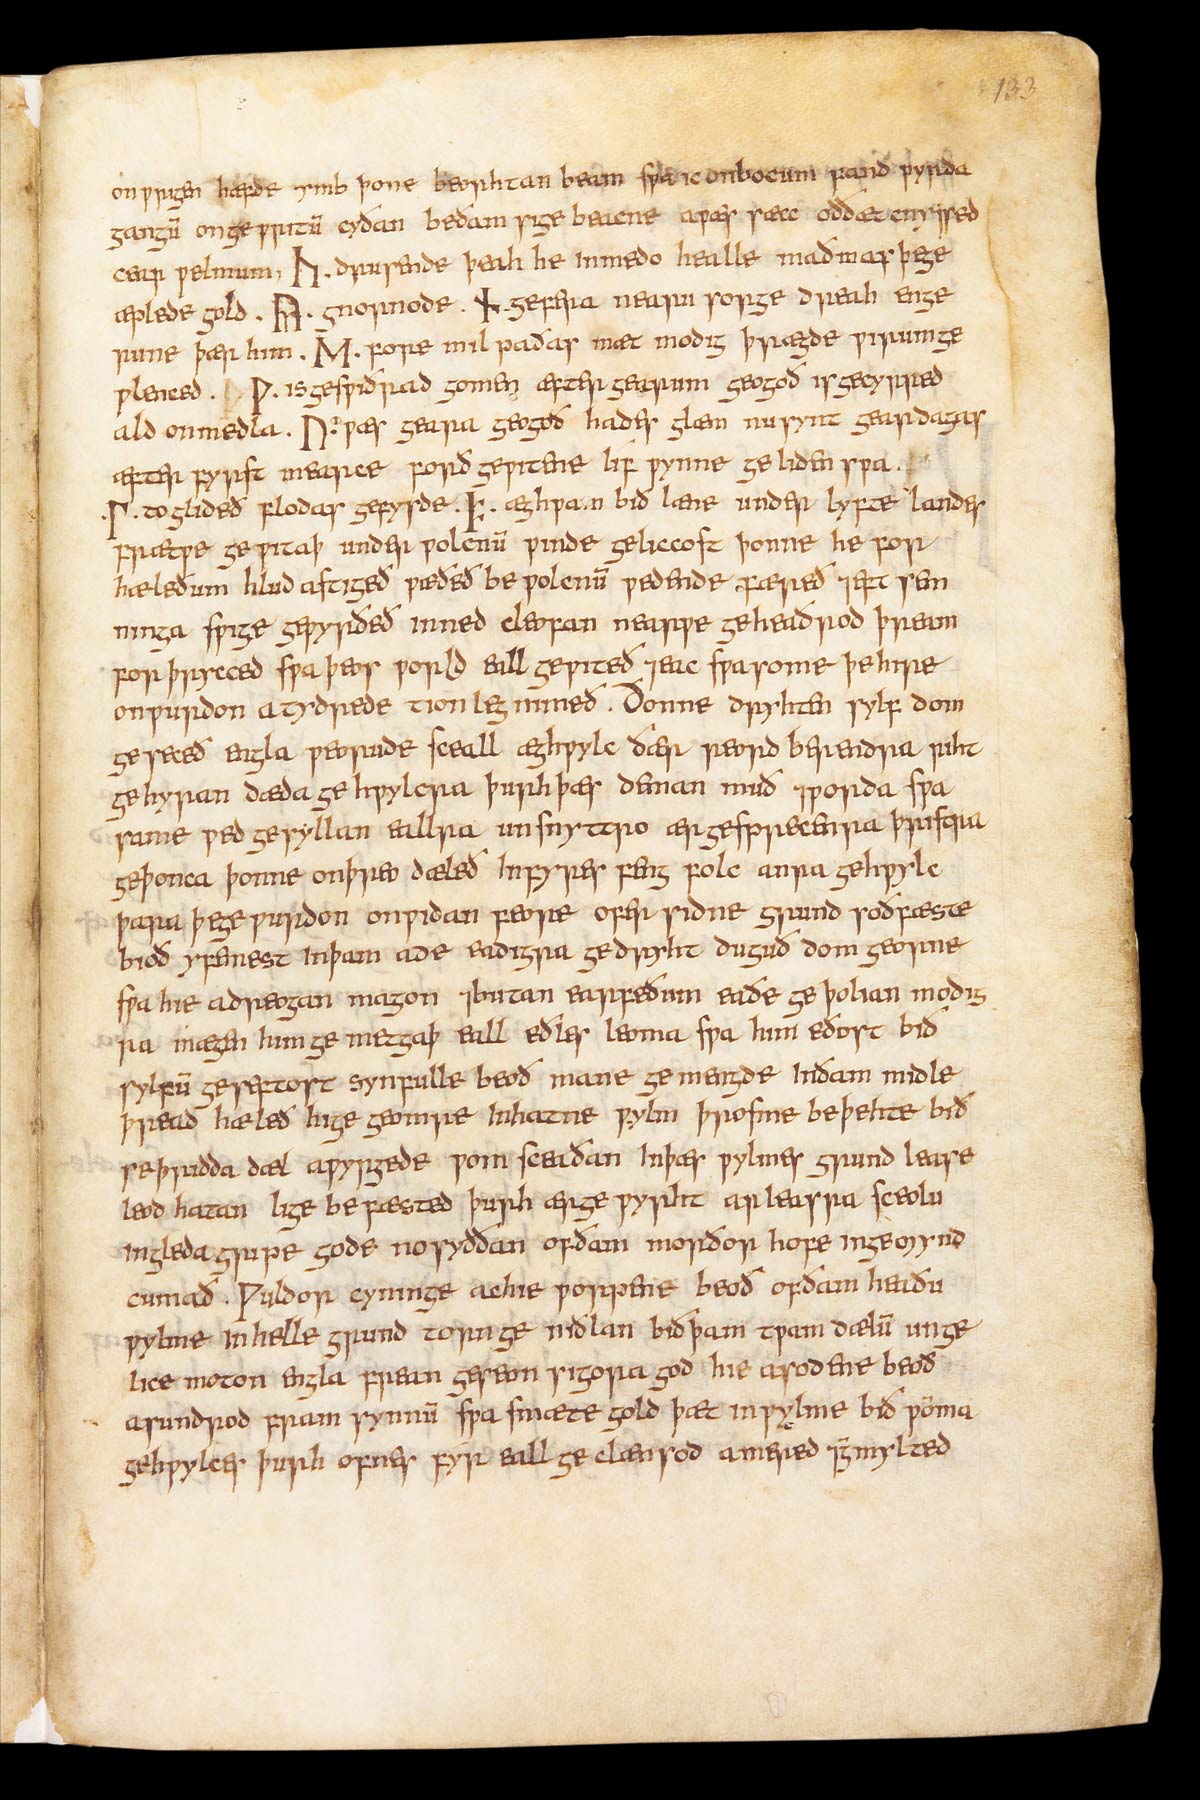 Pagina con le otto rune che formano il nome del poeta Cynewulf, foglio 133r
